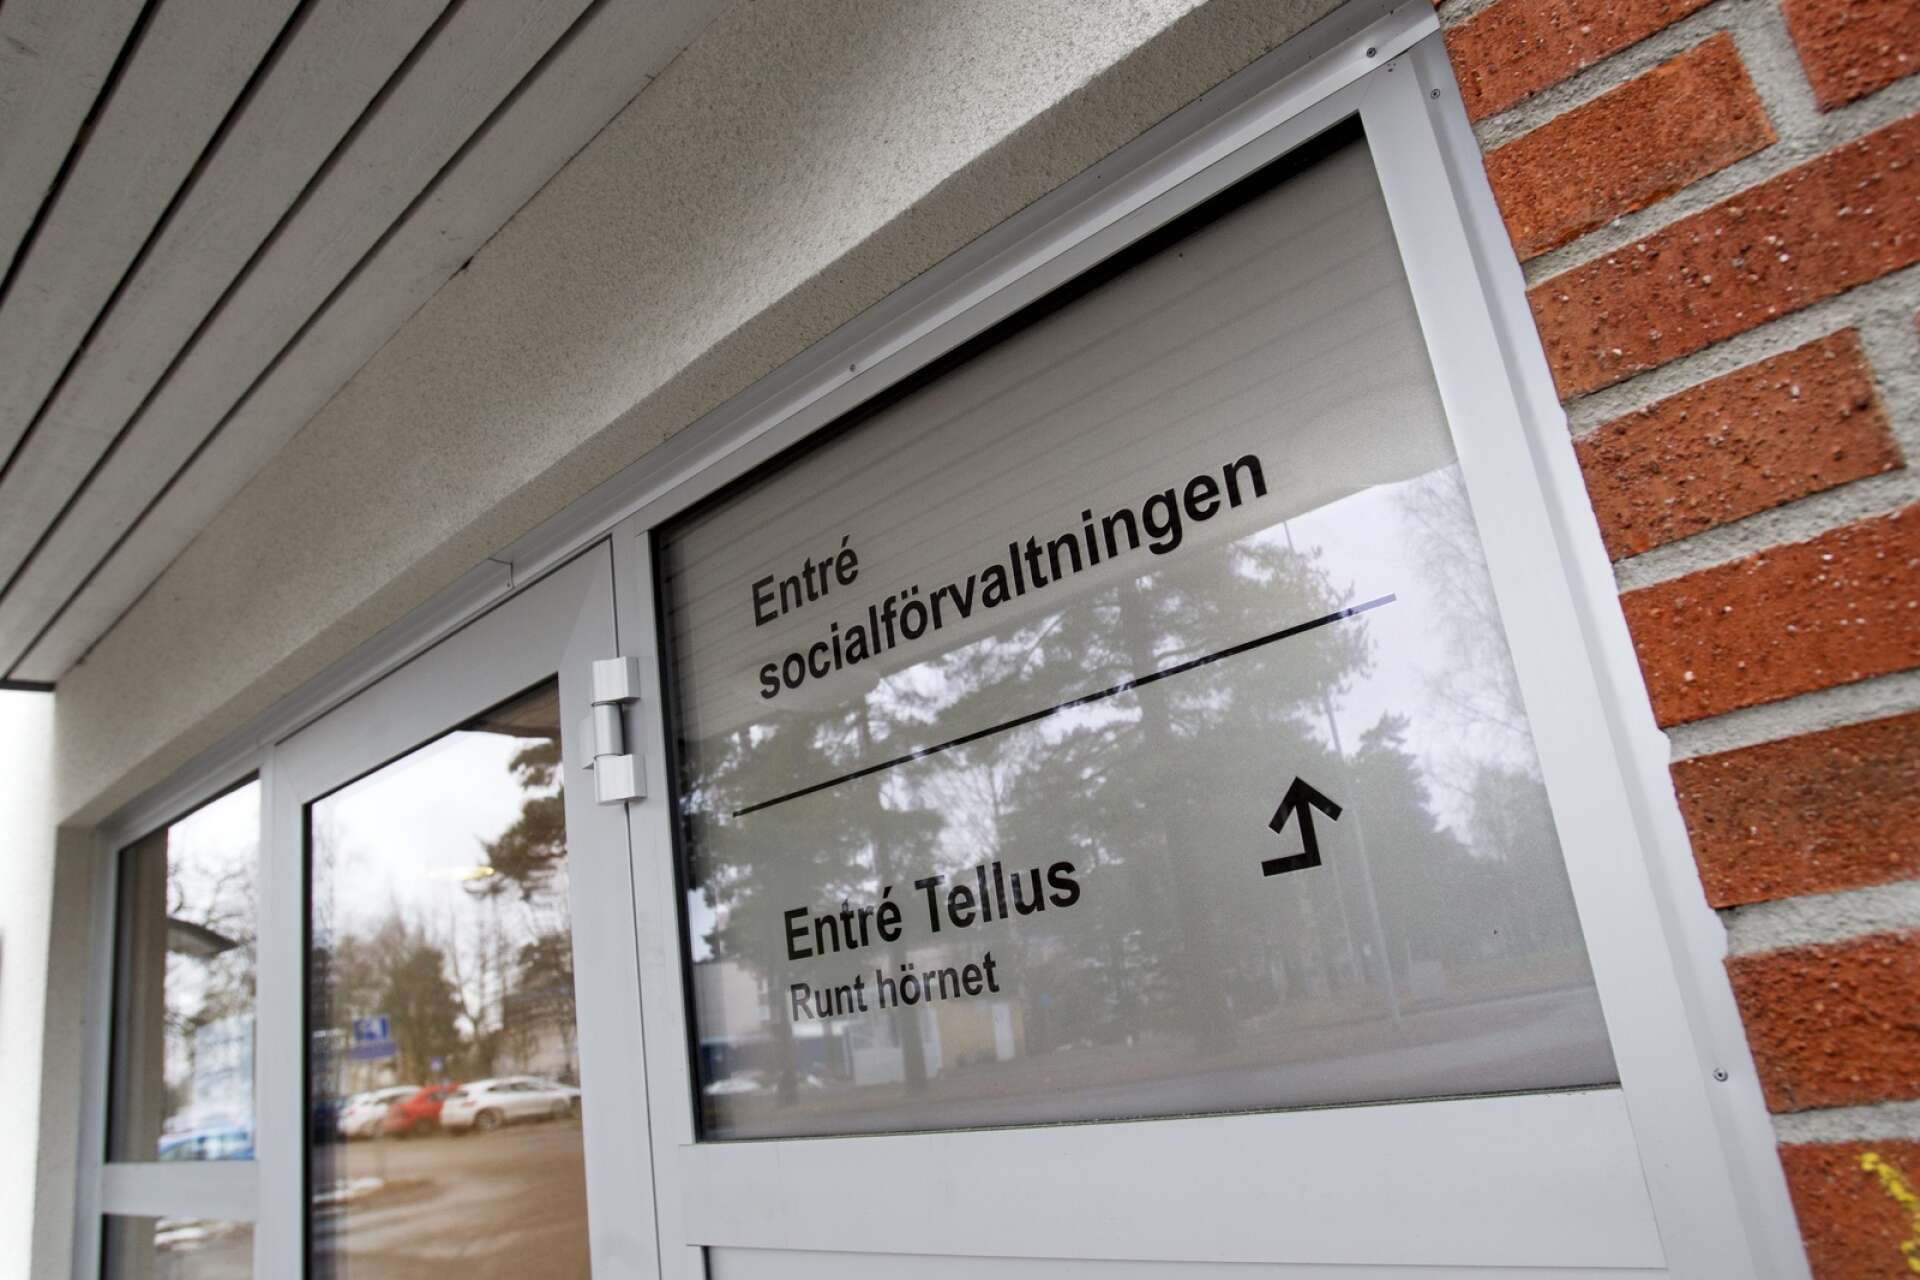 Socialförvaltningen i Karlskoga har haft problem med sitt interna system för orosanmälningar. Nu ser man över rutinerna för att detta inte ska upprepas.